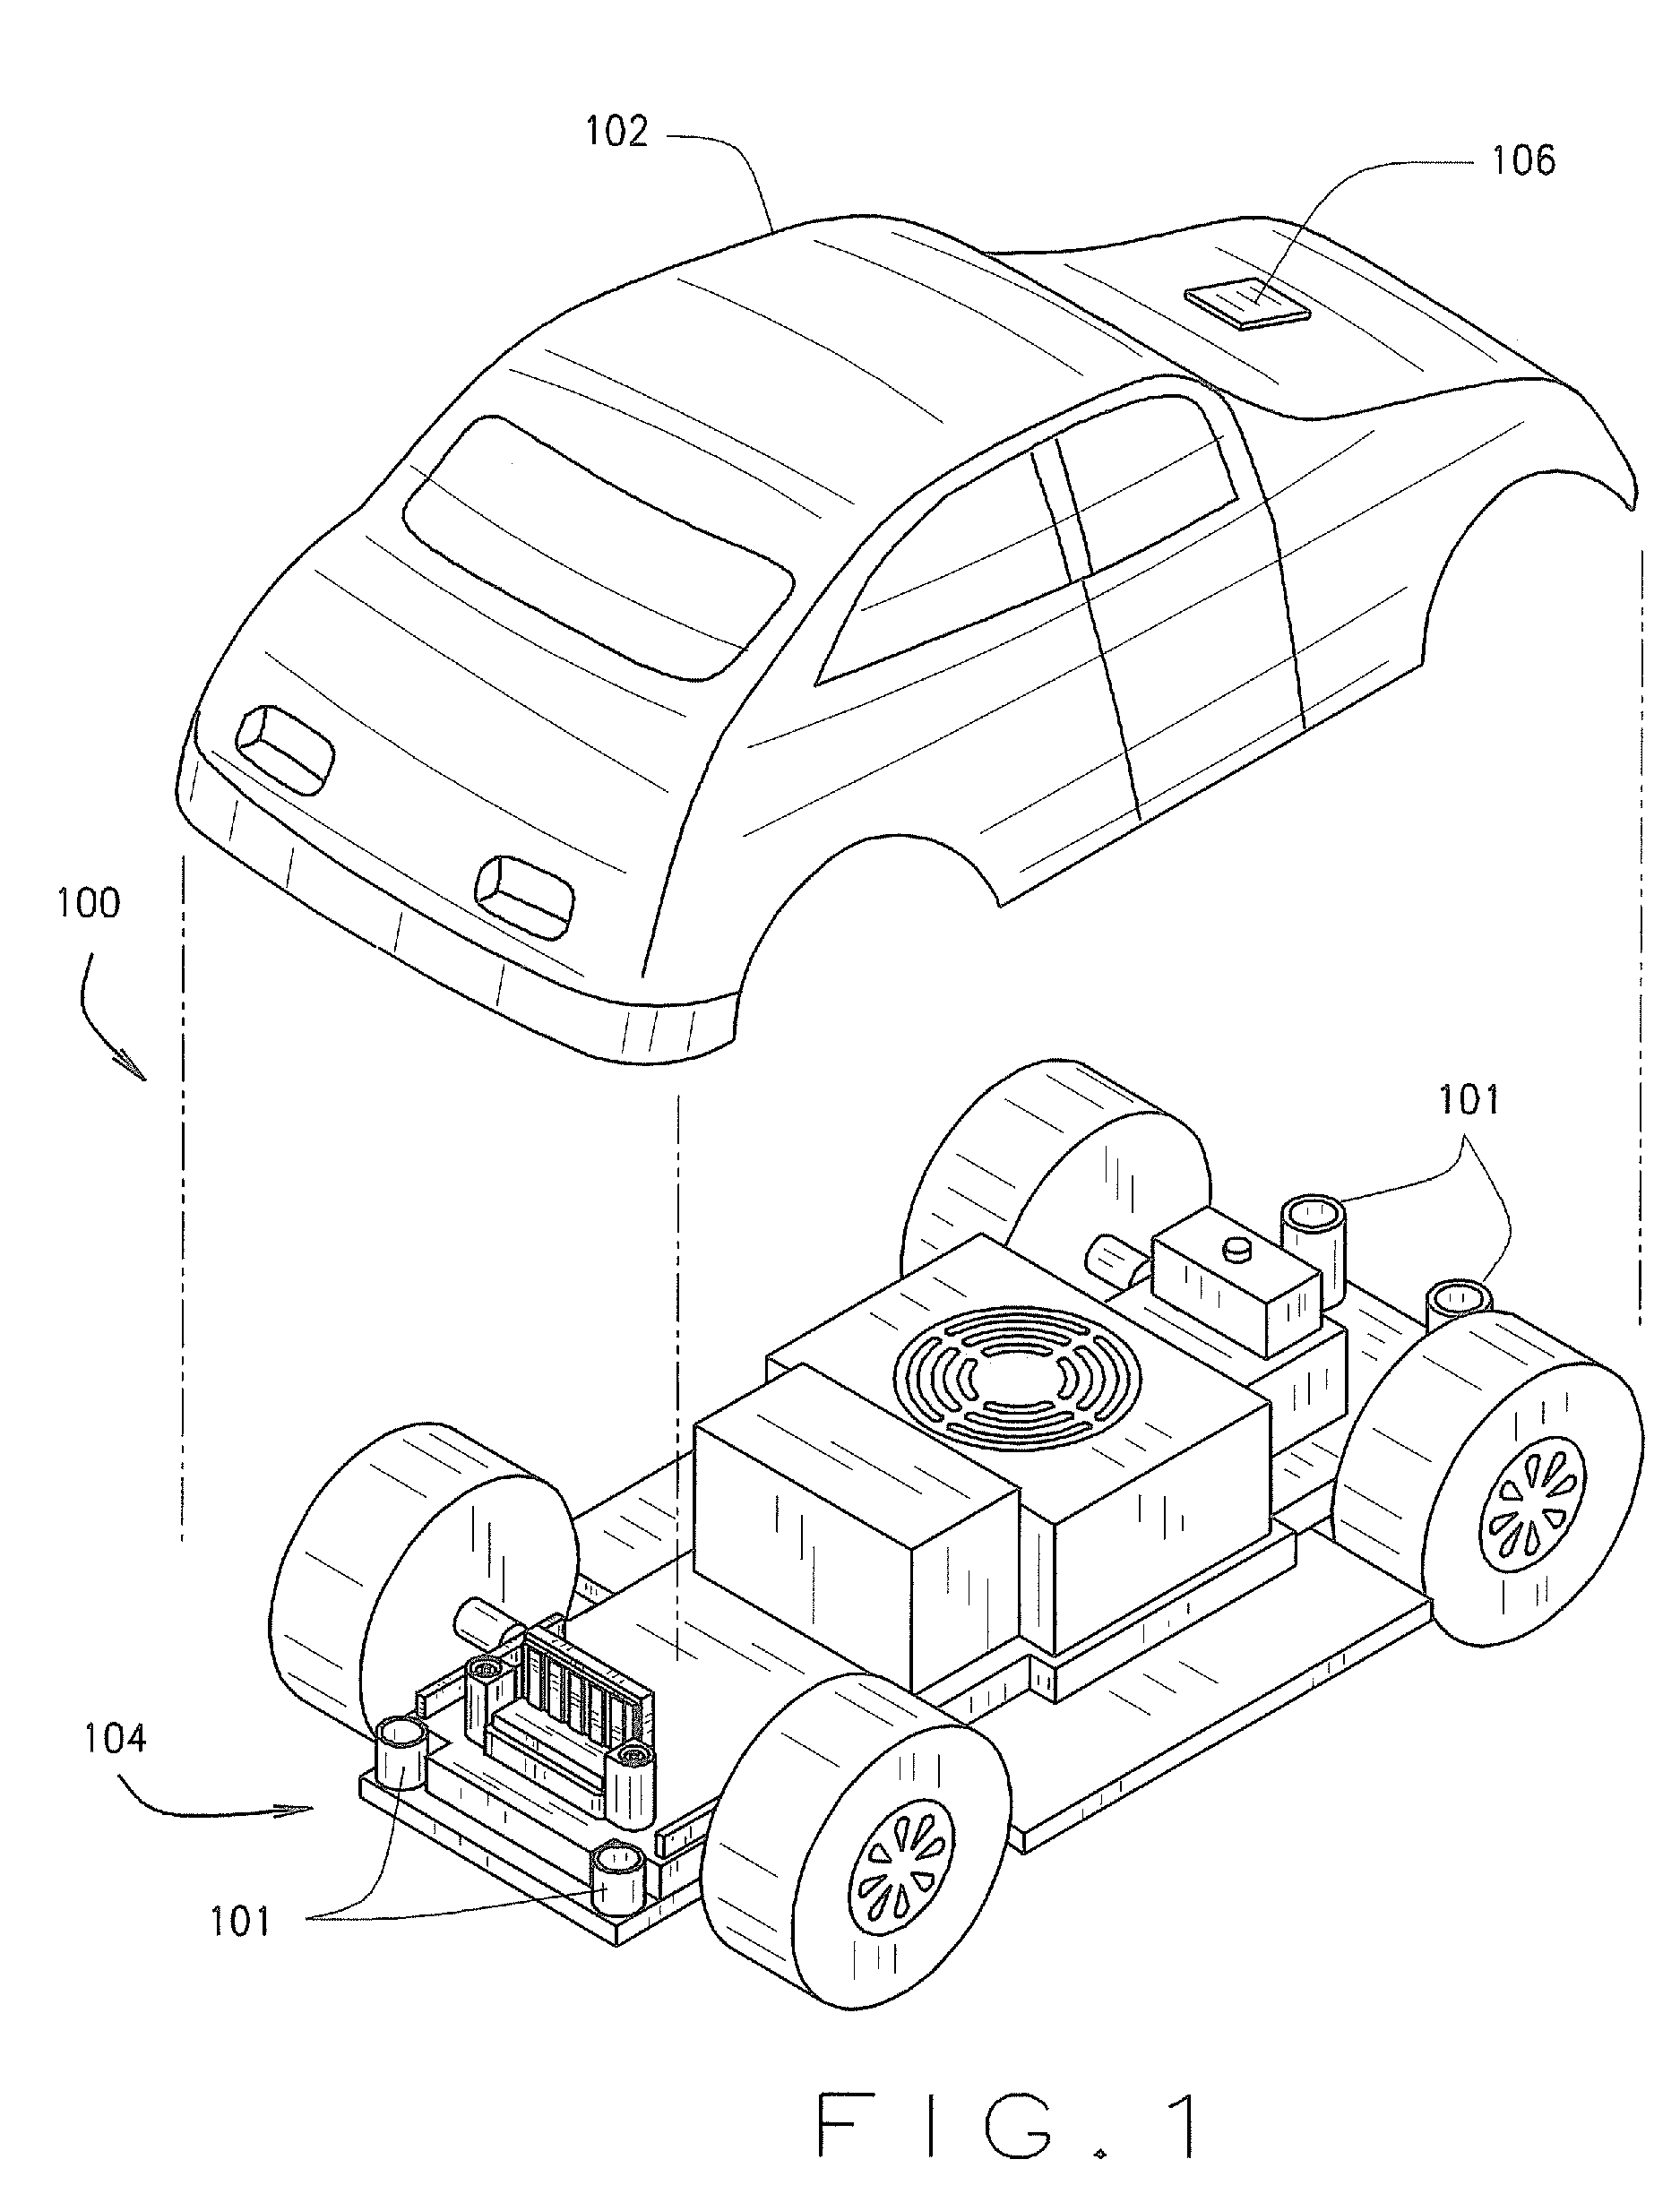 Modular toy vehicle